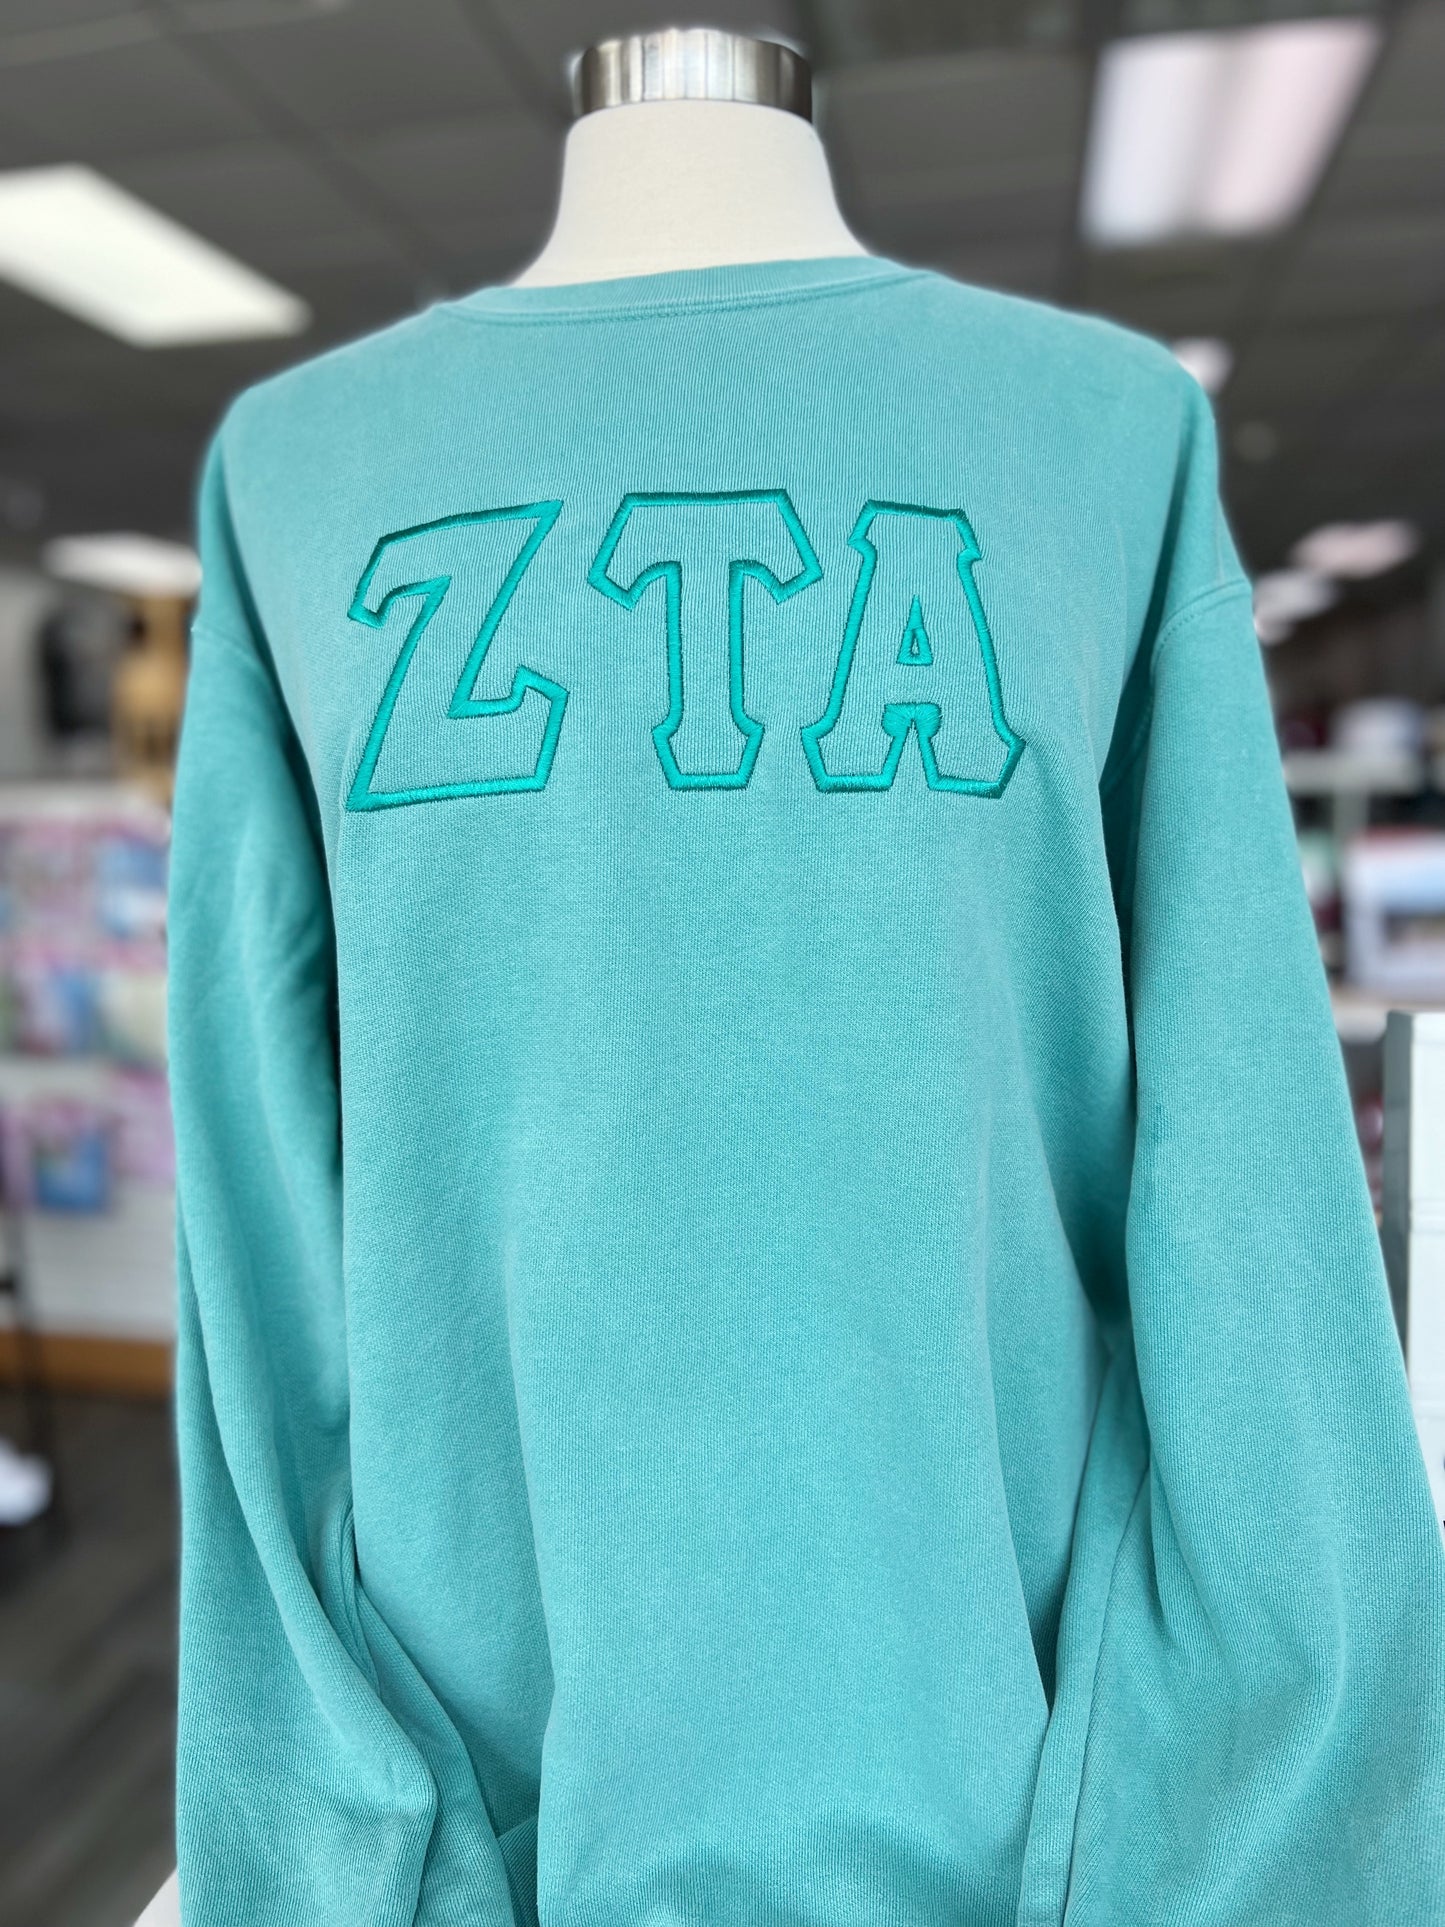 Zeta Monochrome Sweatshirt